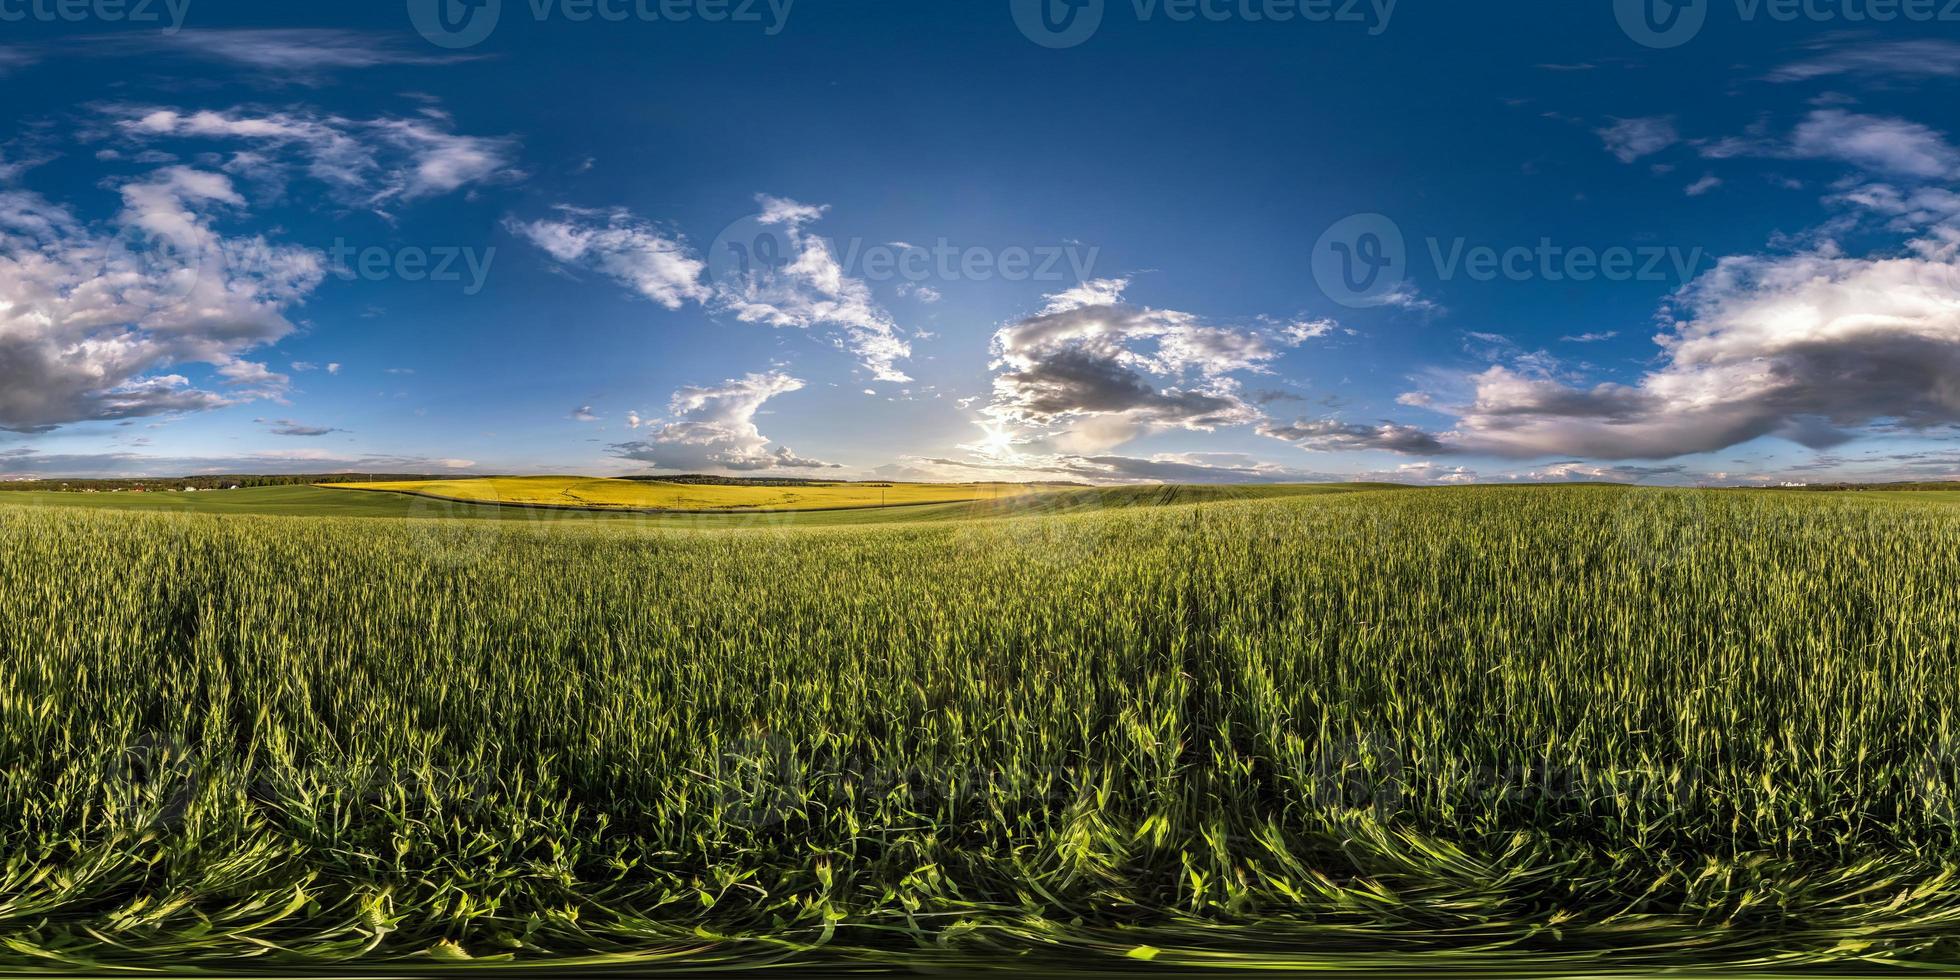 volledig naadloos bolvormig hdri-panorama 360 graden kijkhoek tussen velden in de lenteavond met geweldige wolken voor zonsondergang in equirectangular projectie, voor vr ar virtual reality-inhoud foto